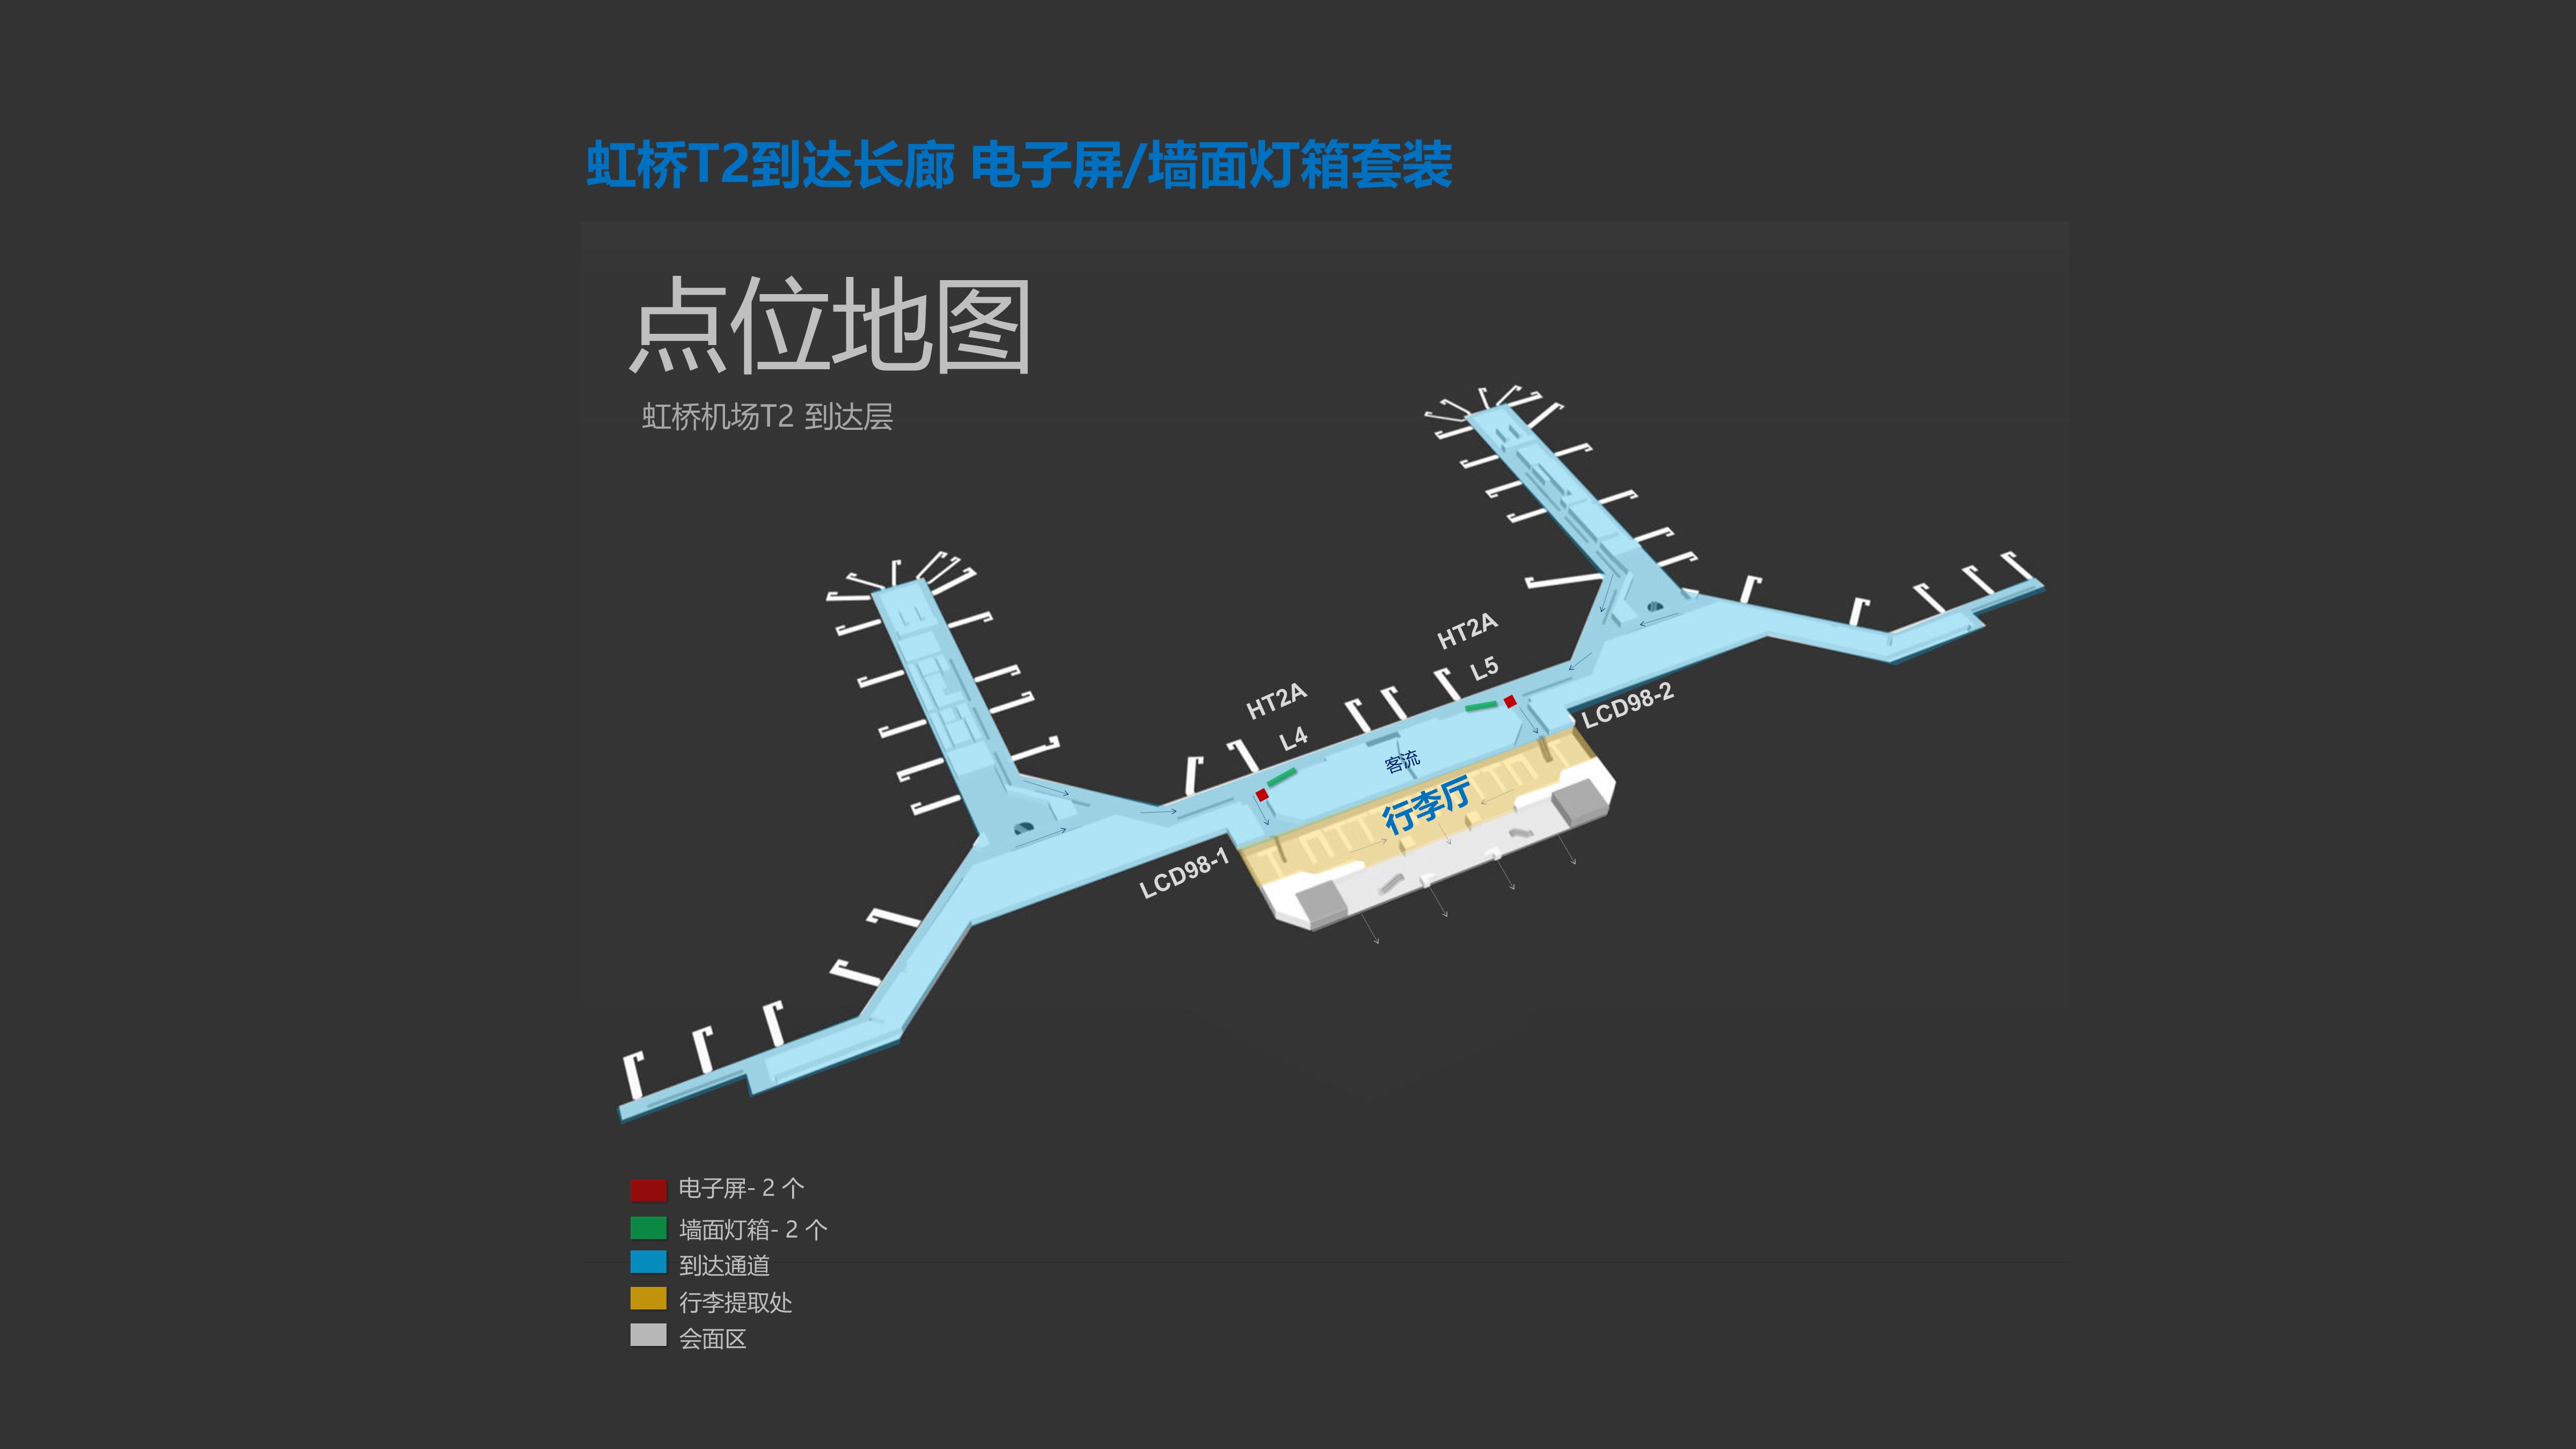 上海机场广告-虹桥T2到达长廊电子屏墙面灯箱位置图